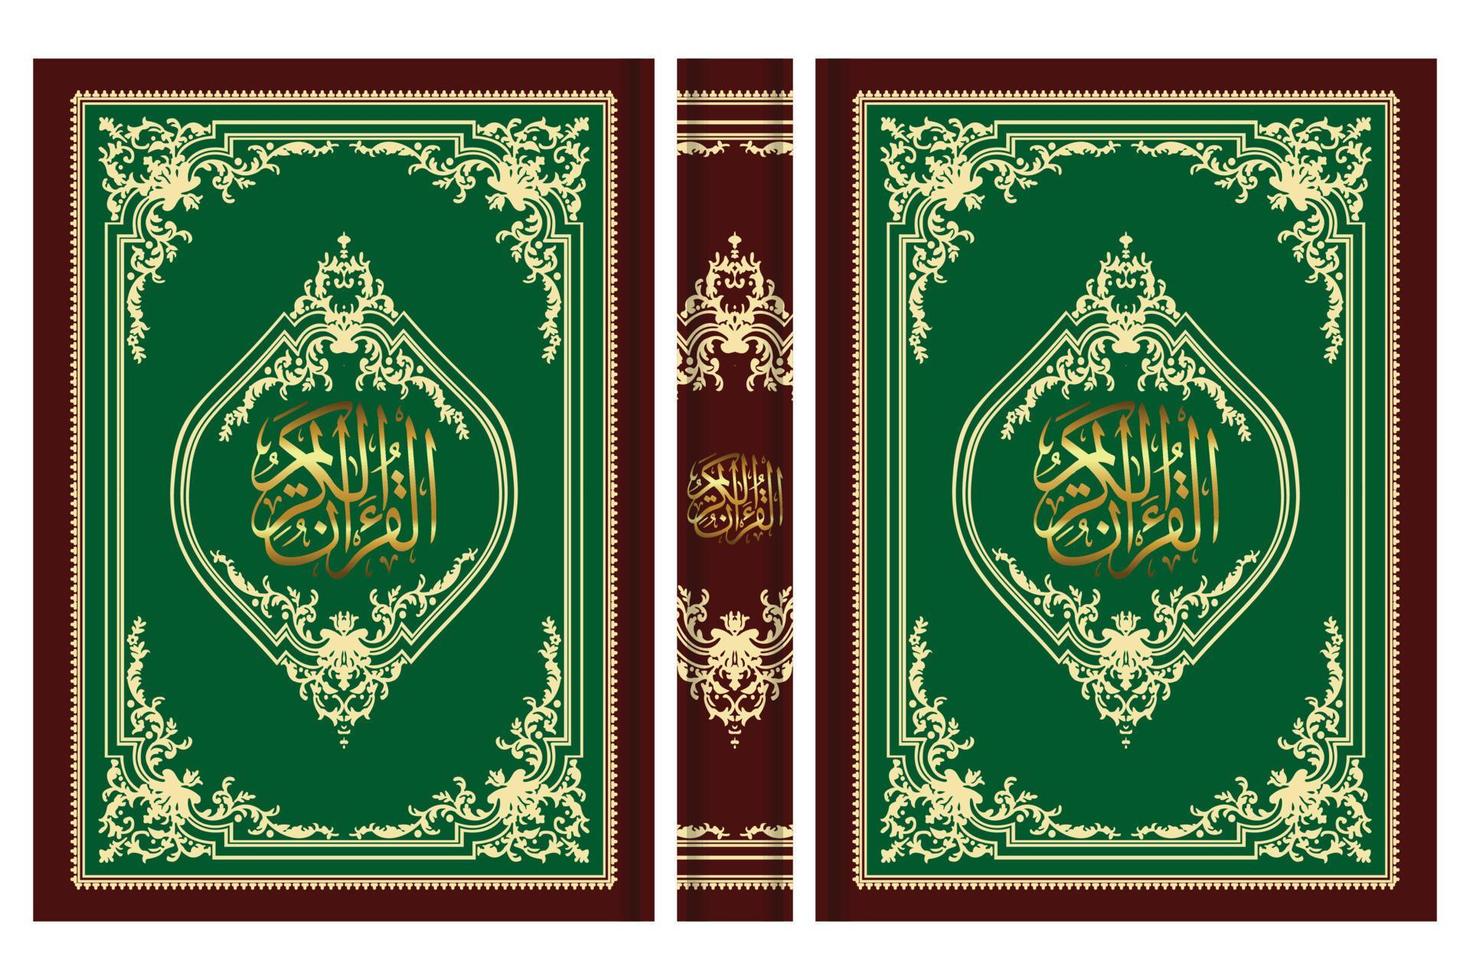 islamique livre couverture frontière conception et saint Al coran vecteur